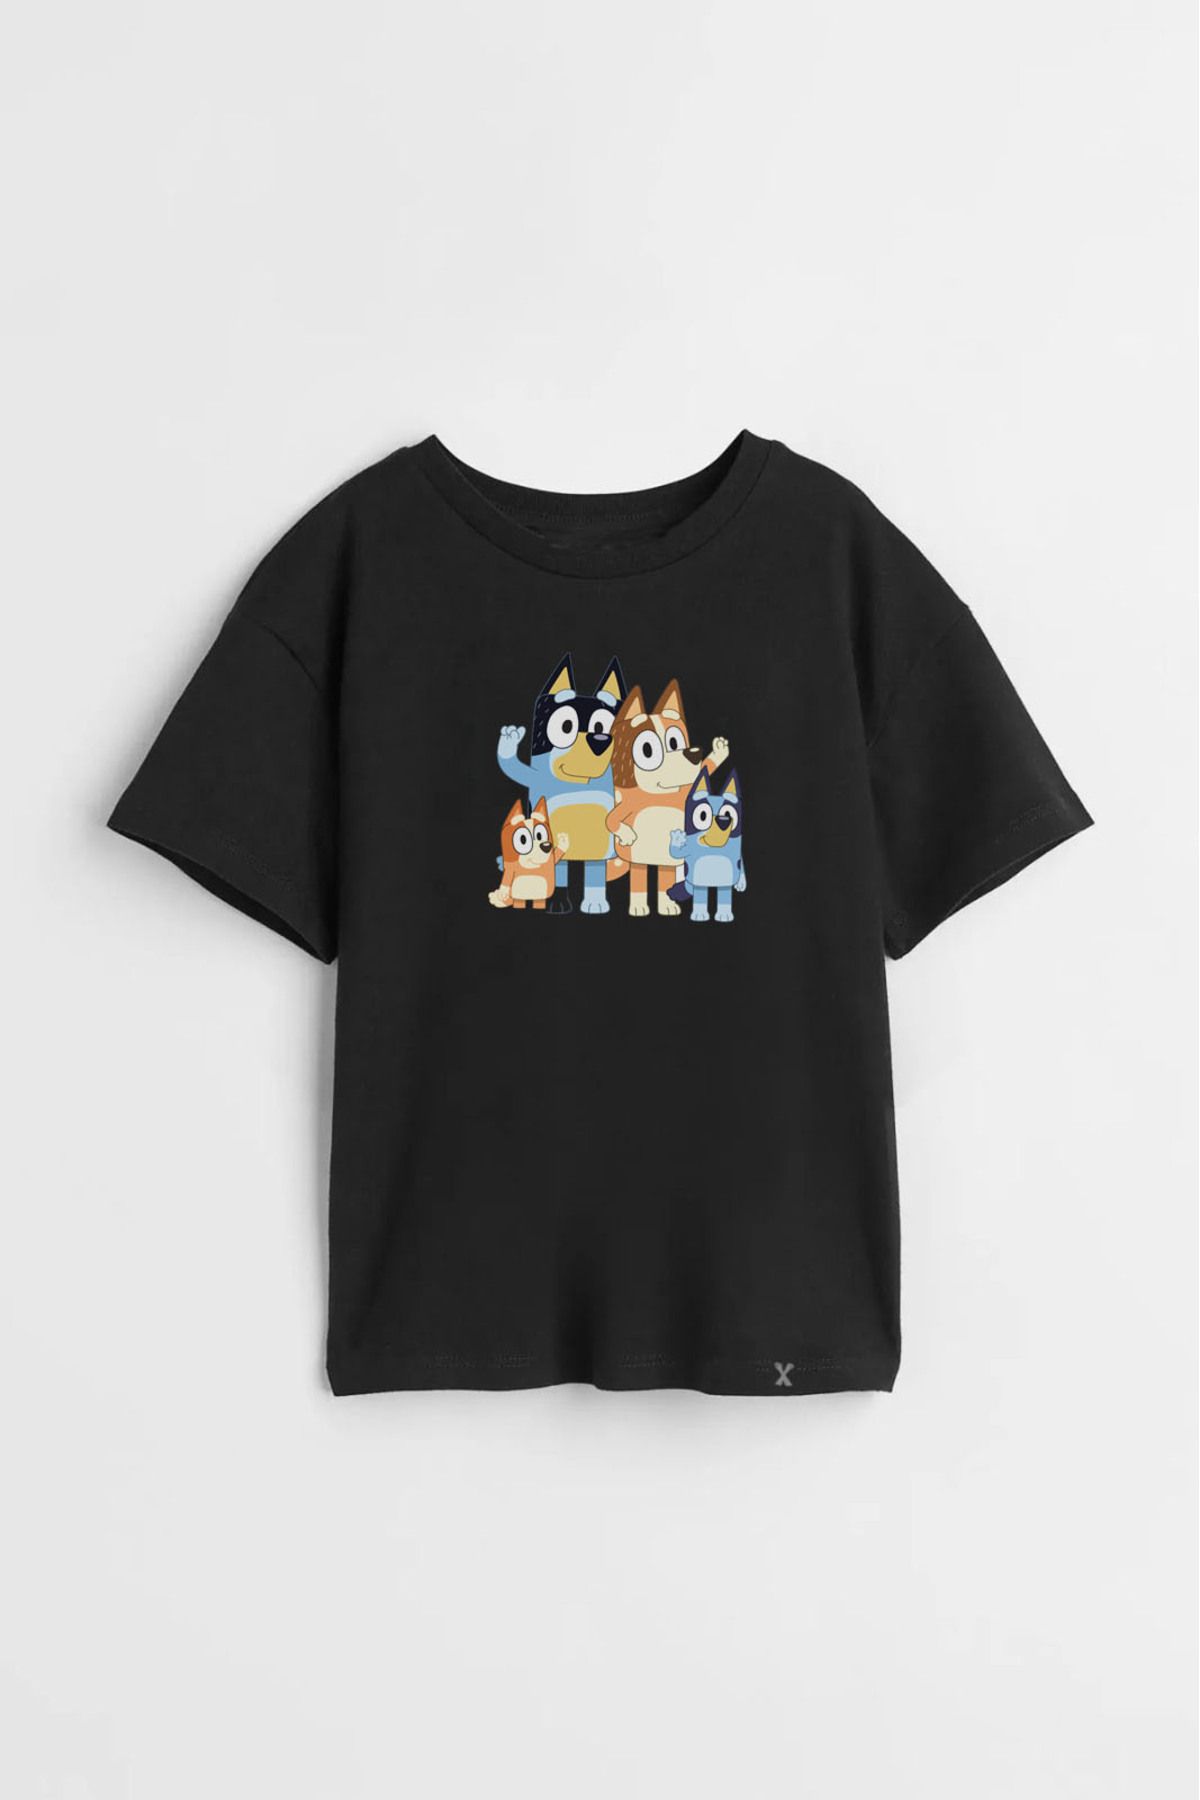 Darkia Bluey  Özel Tasarım Baskılı Çocuk Tişört T-shirt